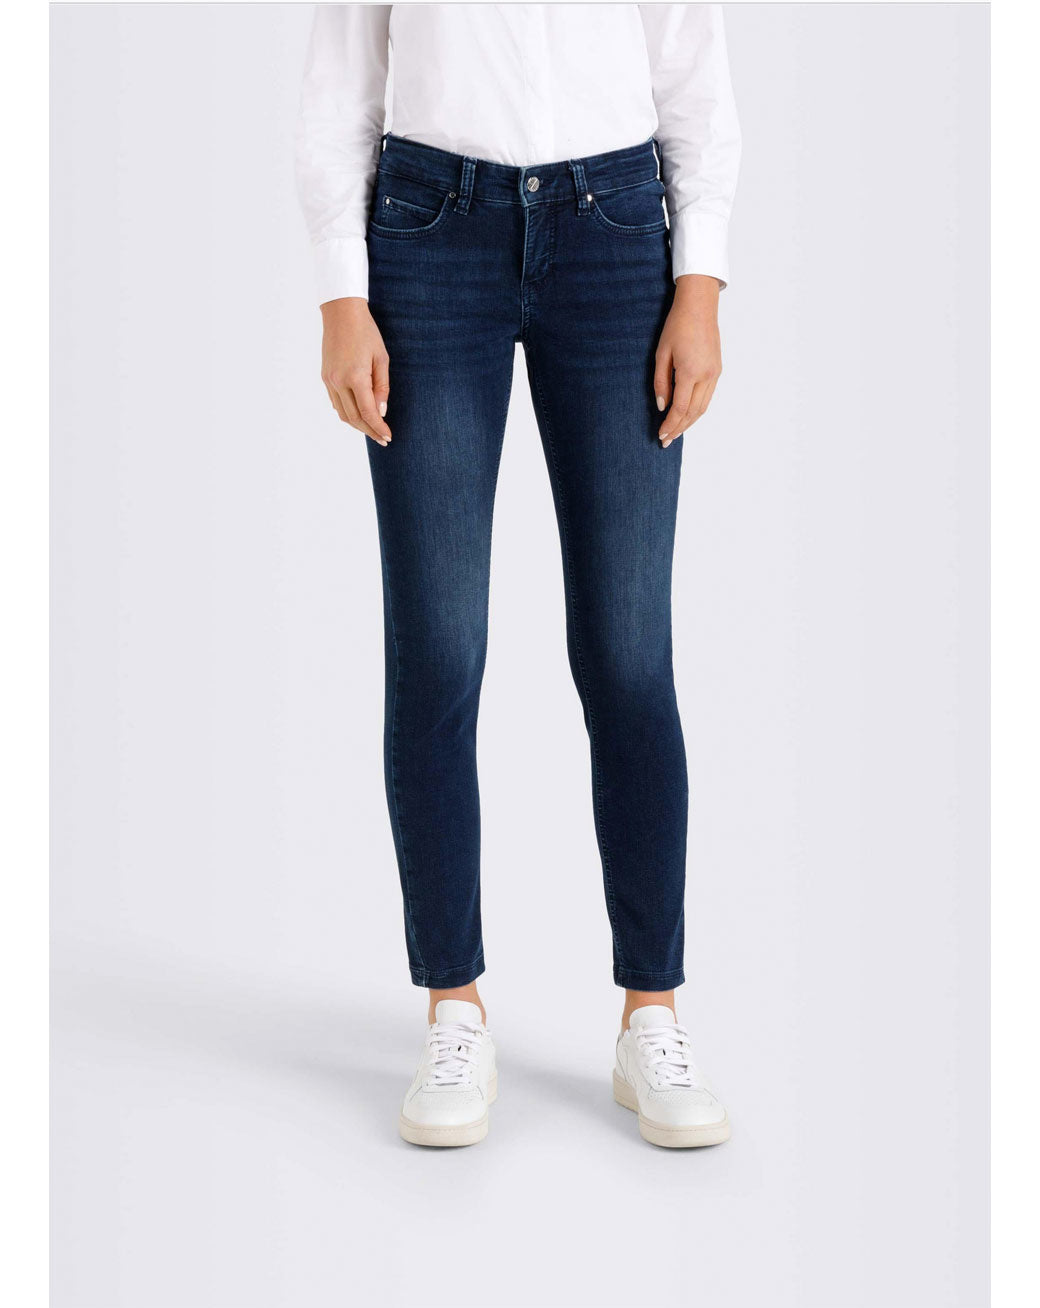 kleding lange vrouwen mac jeans dream skinny basic slight